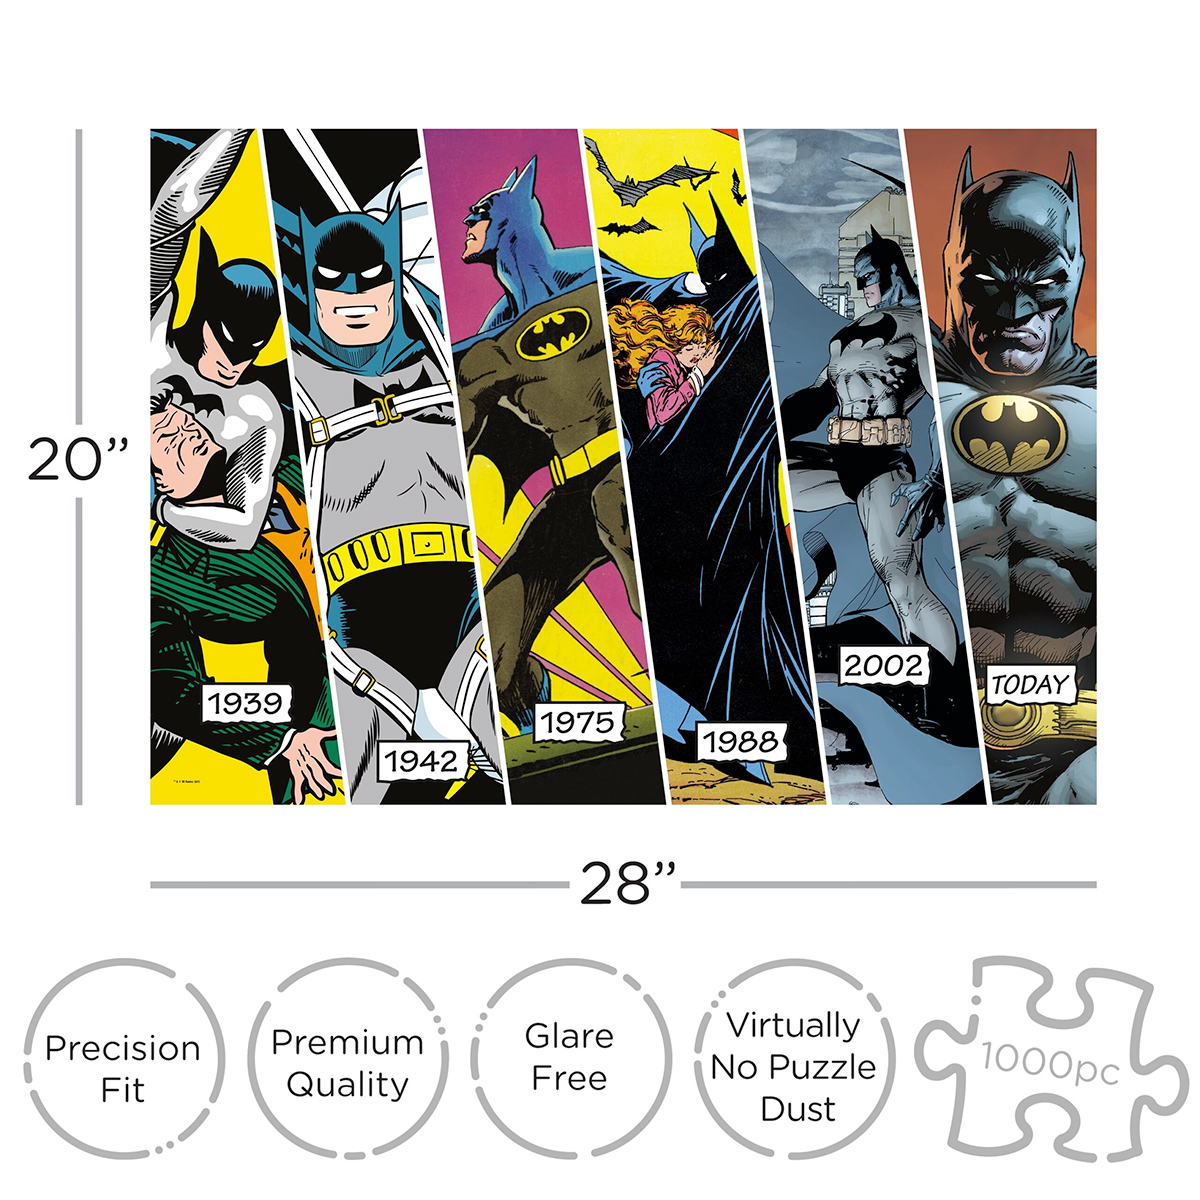 Quebra-Cabeça Batman Timeline com Linha do Tempo desde 1939